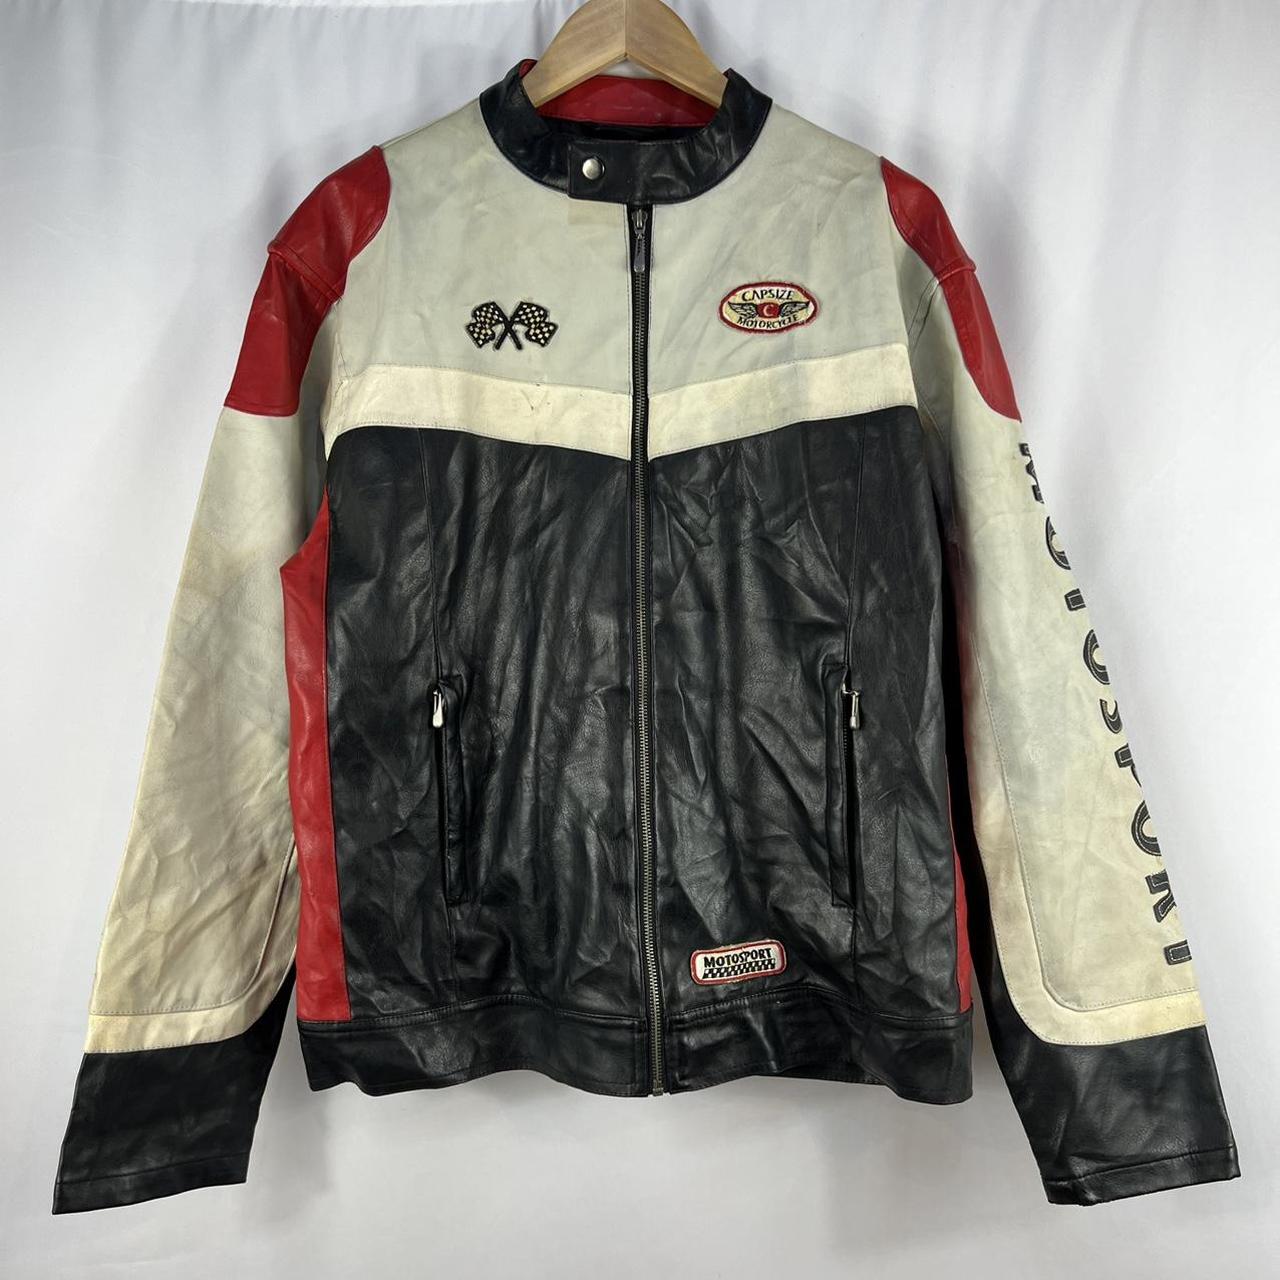 Vintage 90s Motorsport Leather Biker Jacket - Size... - Depop